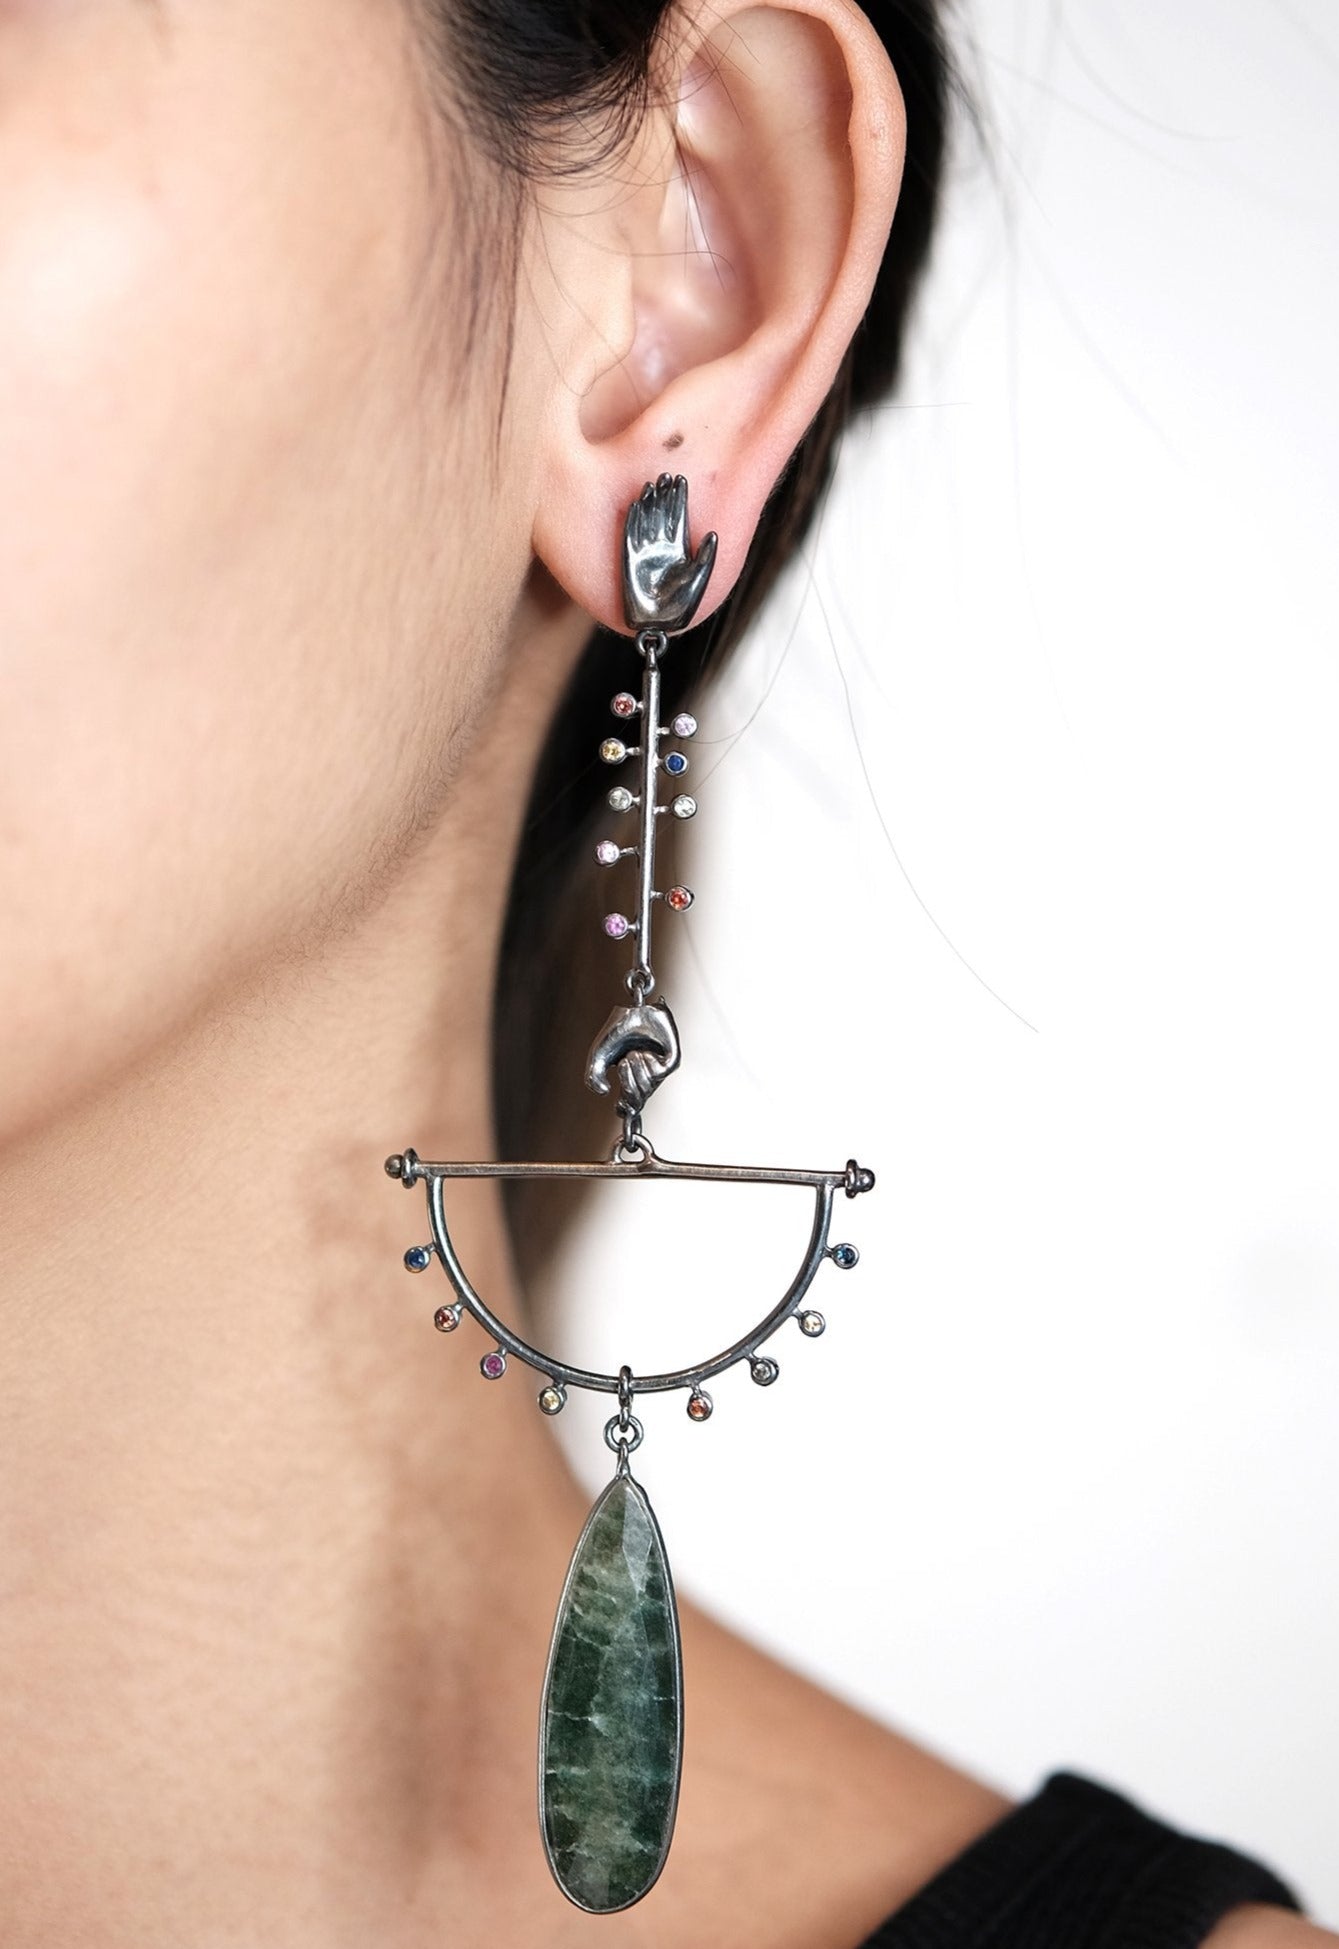 The Madstone Mudras earrings